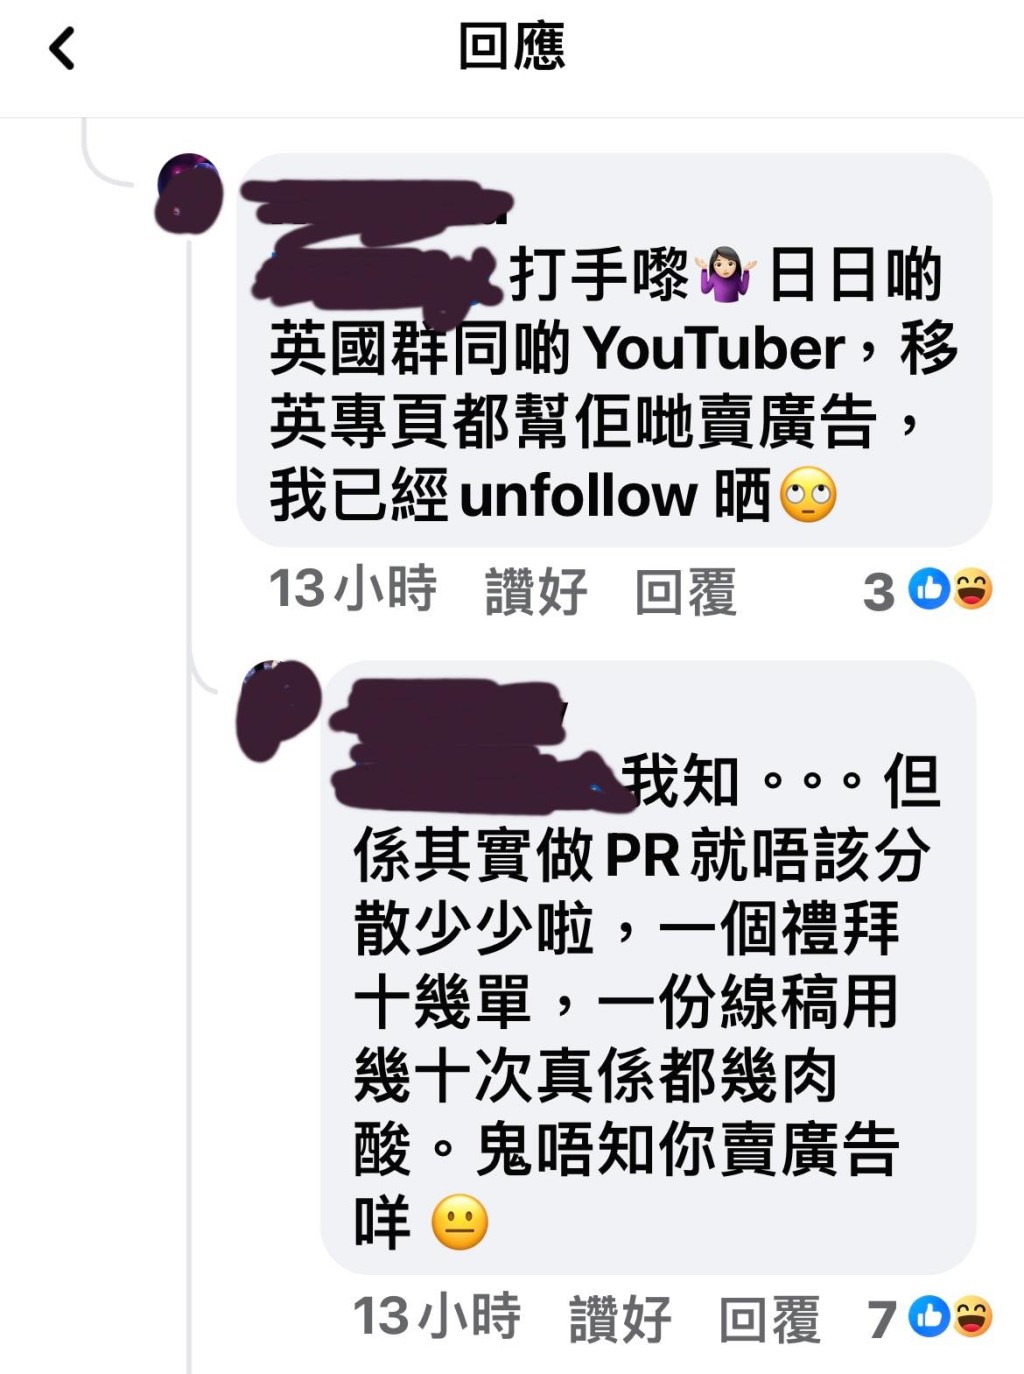 在网上投诉的事主上载多张投诉HKTVmall留言的截图（图片来源：Facebook）